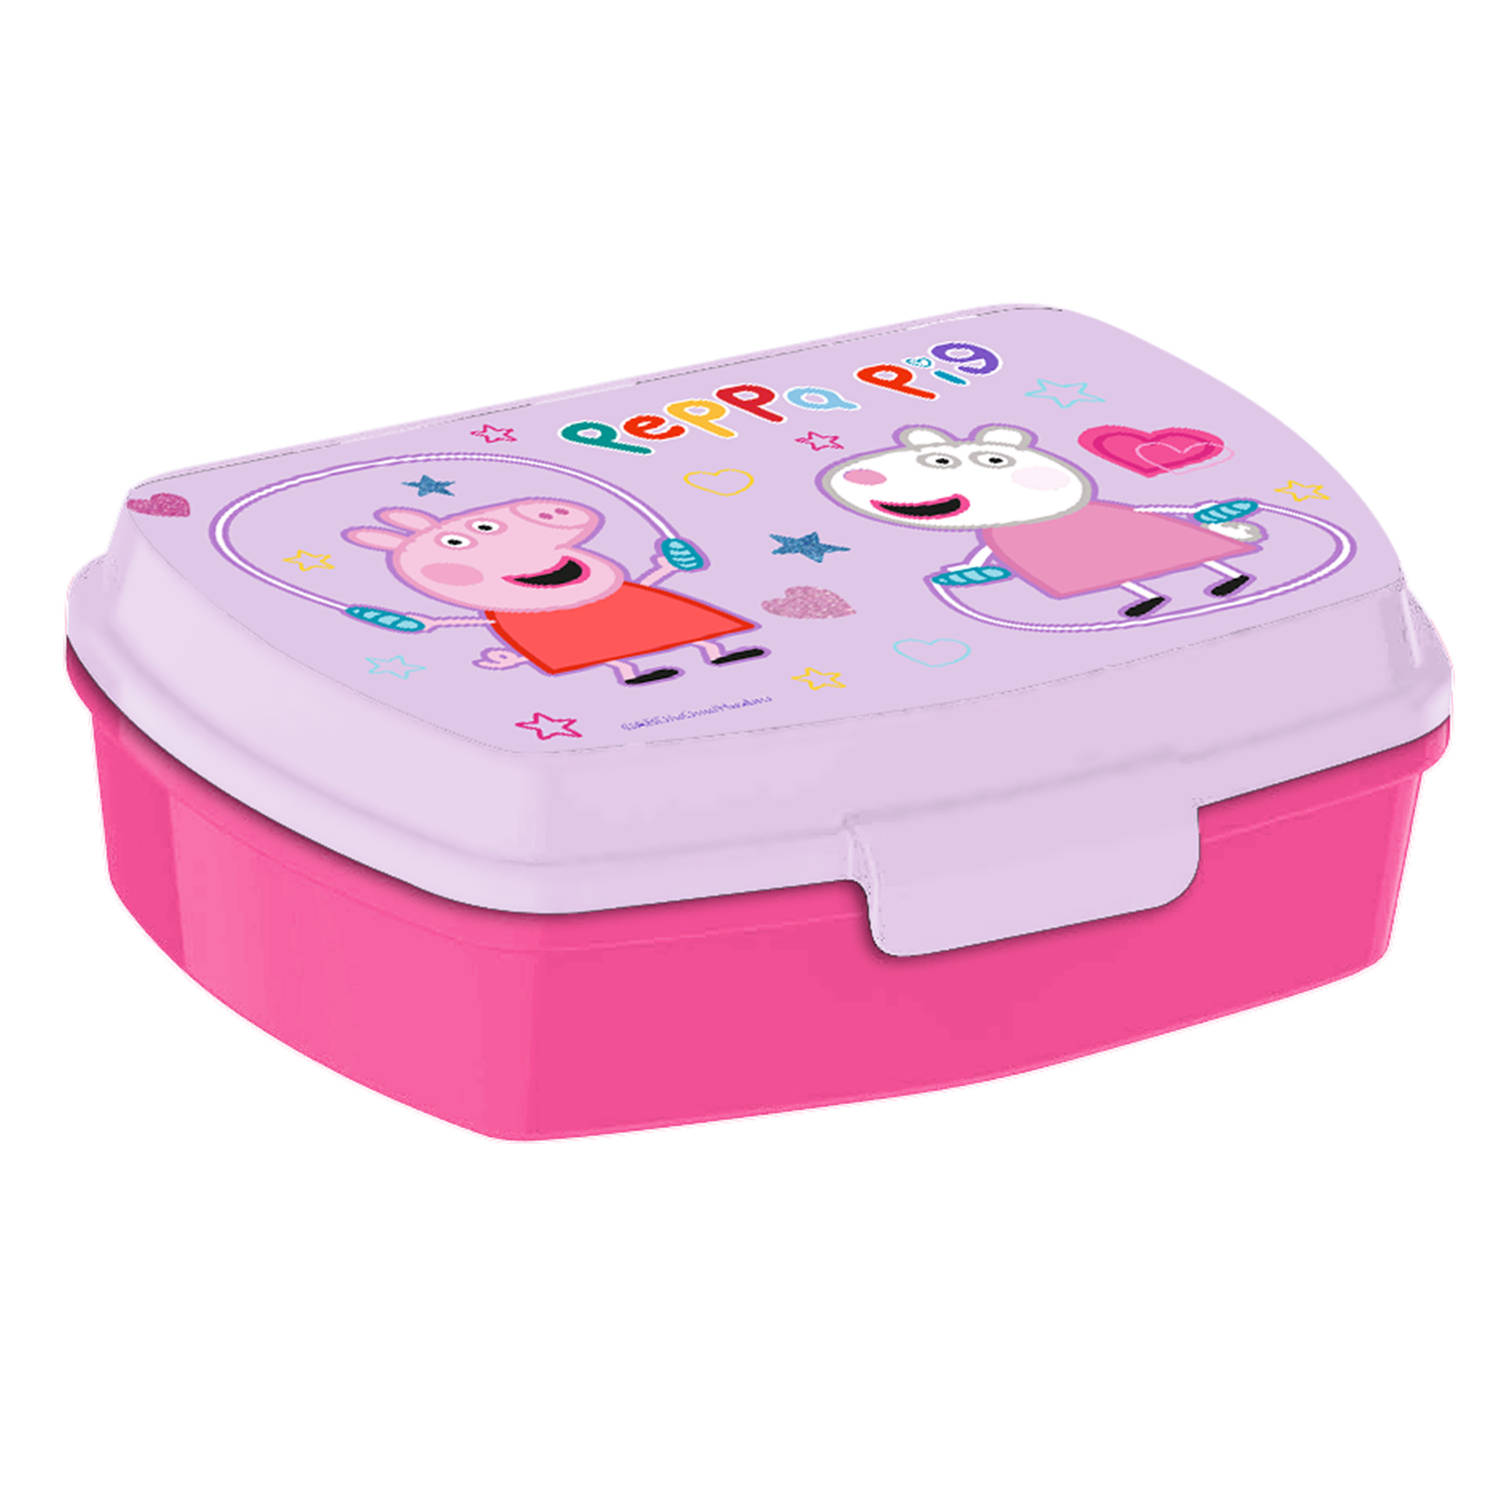 Peppa PigA?A broodtrommel-lunchbox voor kinderen roze kunststof 20 x 10 cm Lunchboxen